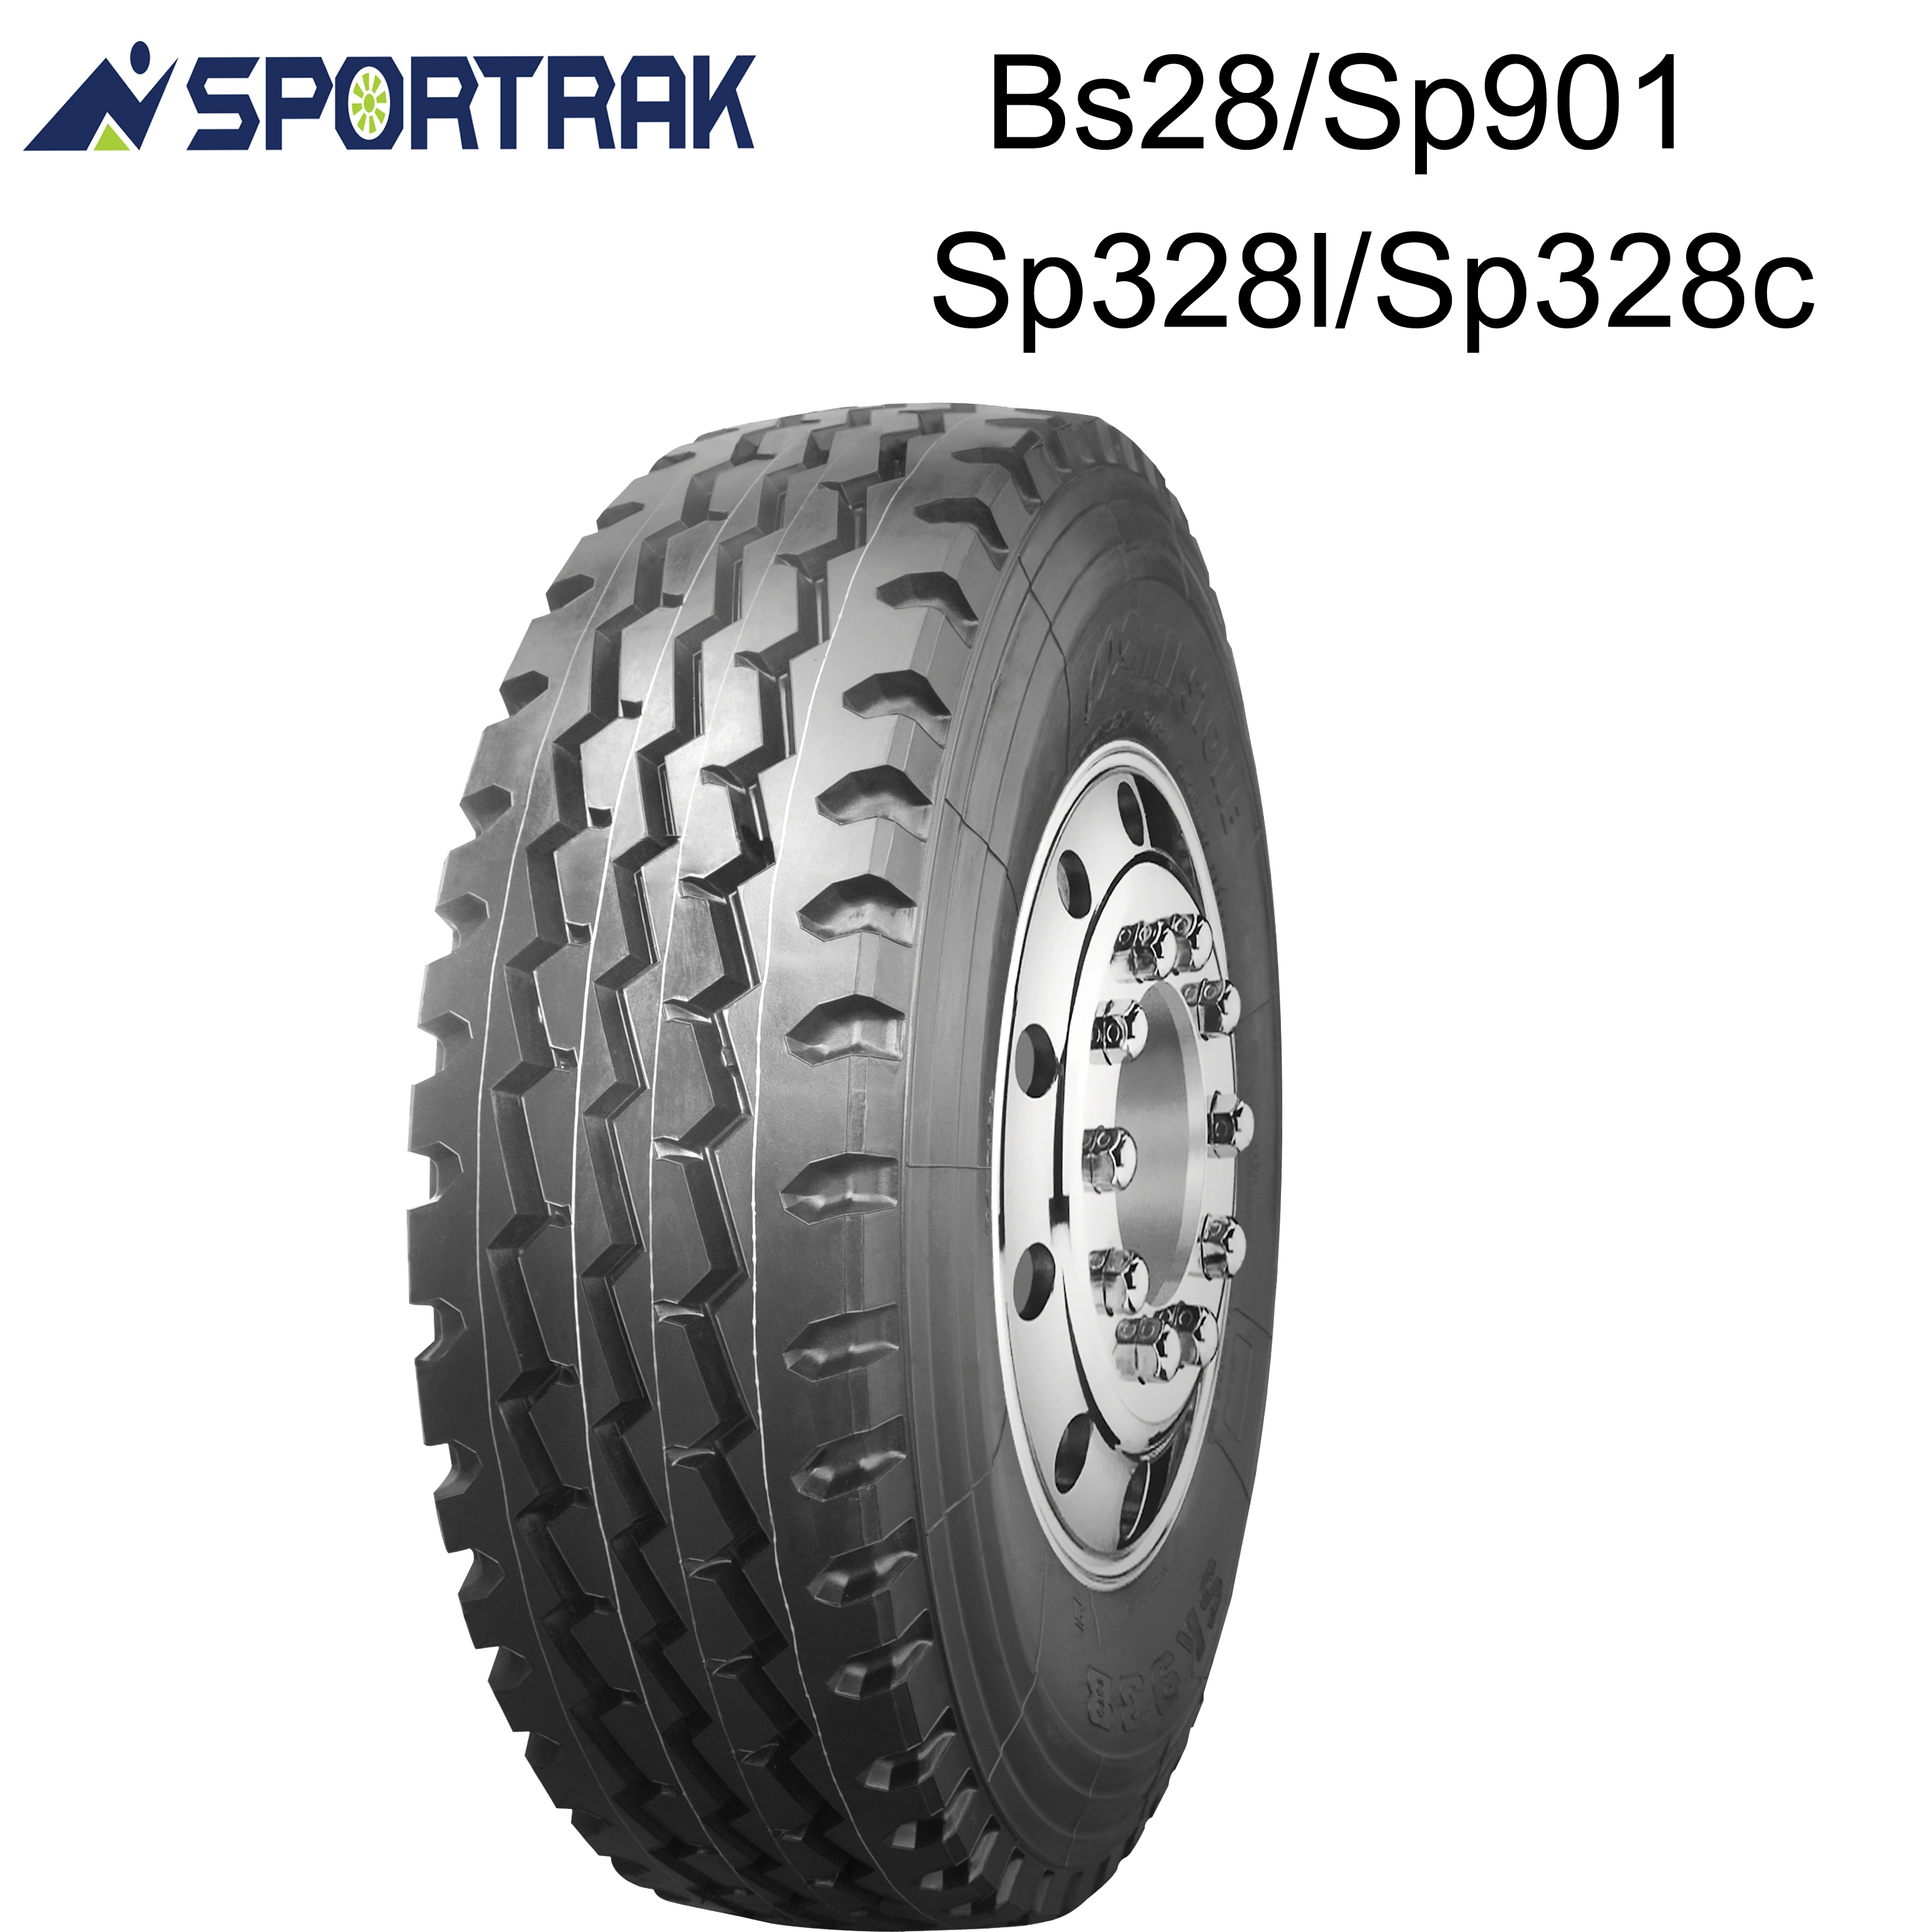 Sportrak погрузчика давление в шинах внутренней трубки 8,25 x 16 ШИН